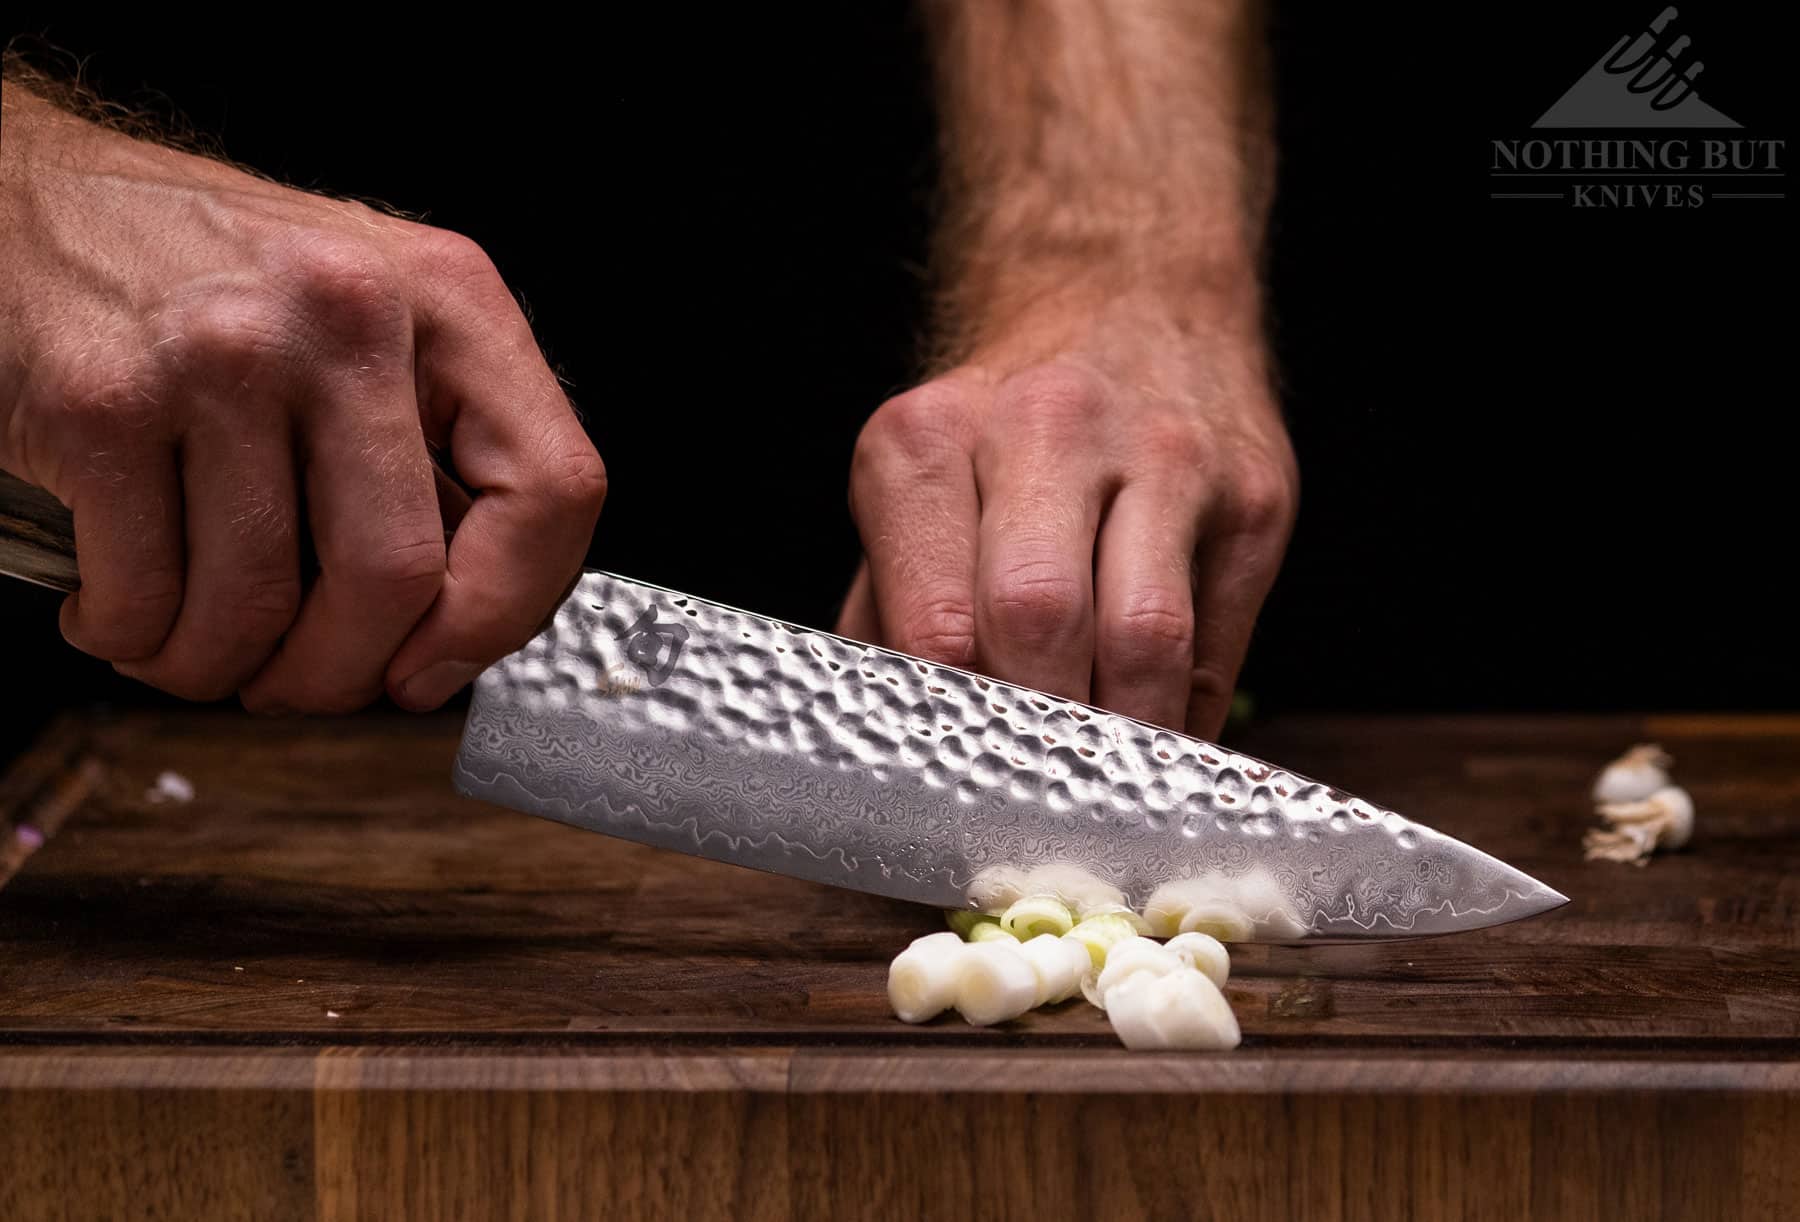 Shun Premier Grey Chef&s Knife, 8-in.